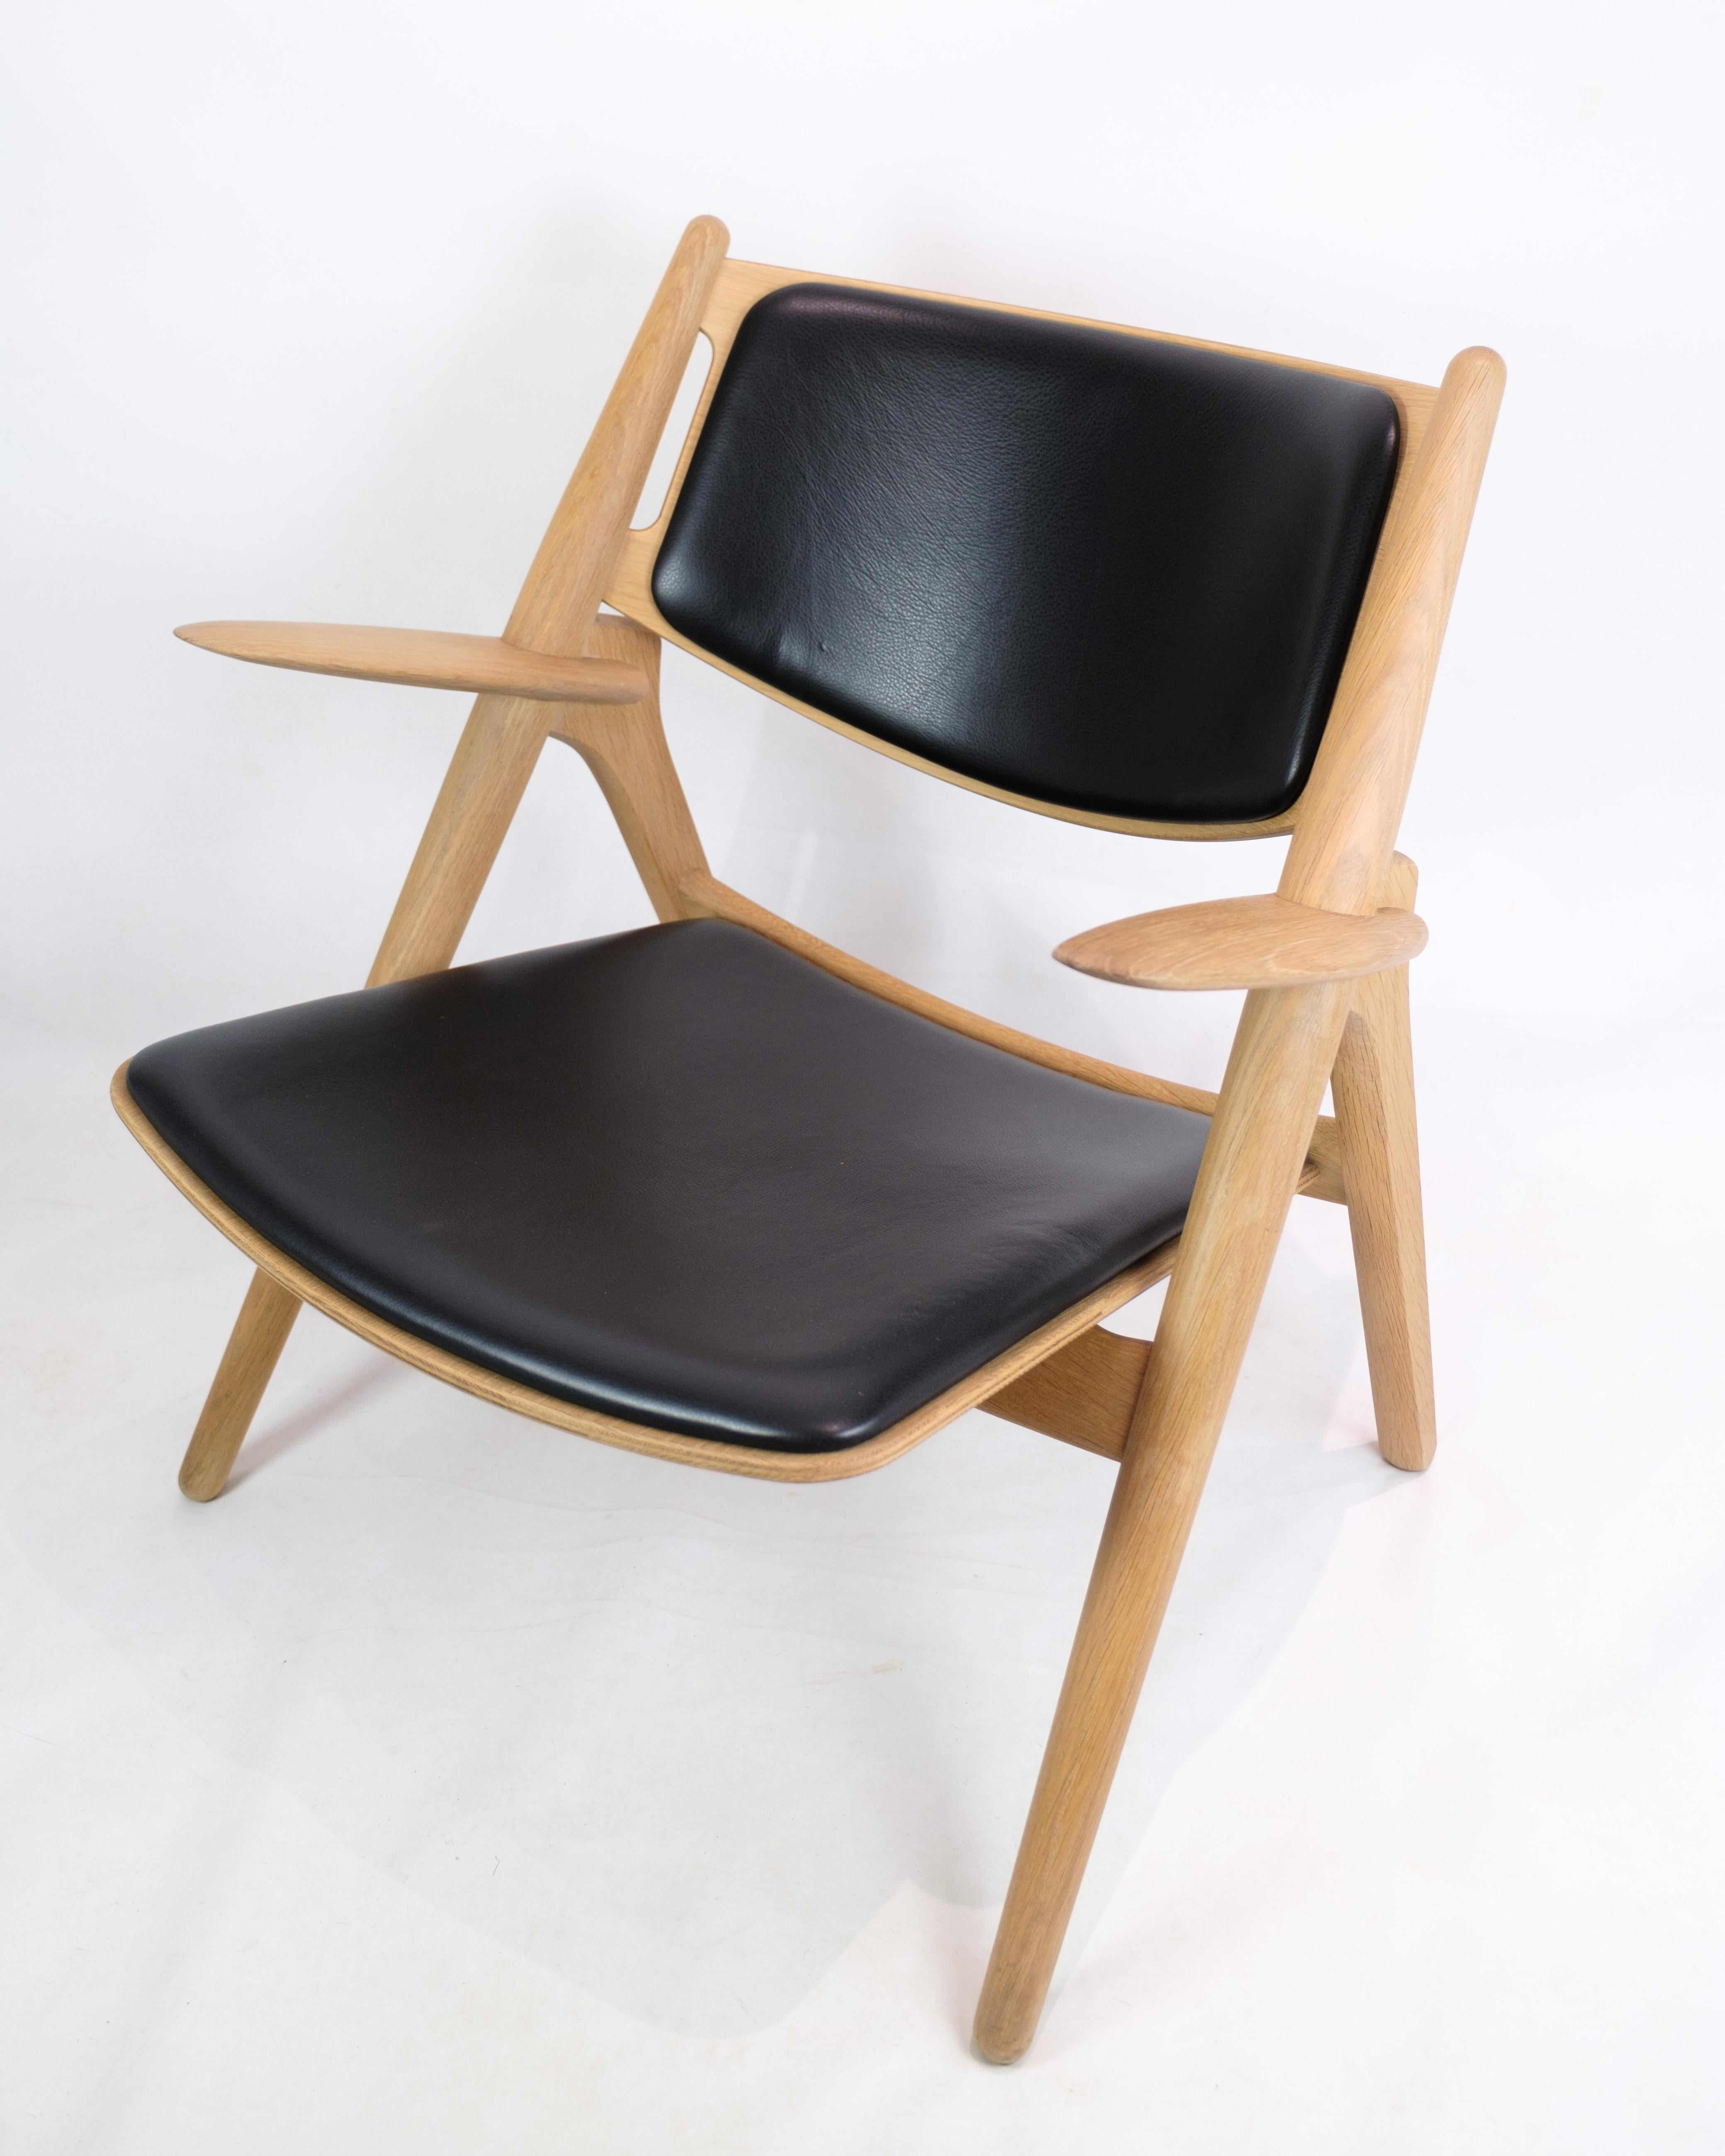 Der Sessel, Modell CH28, stellt eine sublime Begegnung zwischen Funktionalität und Ästhetik dar. Er wurde von dem bekannten Designer Hans J. Wegner entworfen und von Carl Hansen & Søn hergestellt. Diese aus massivem Eichenholz gefertigte